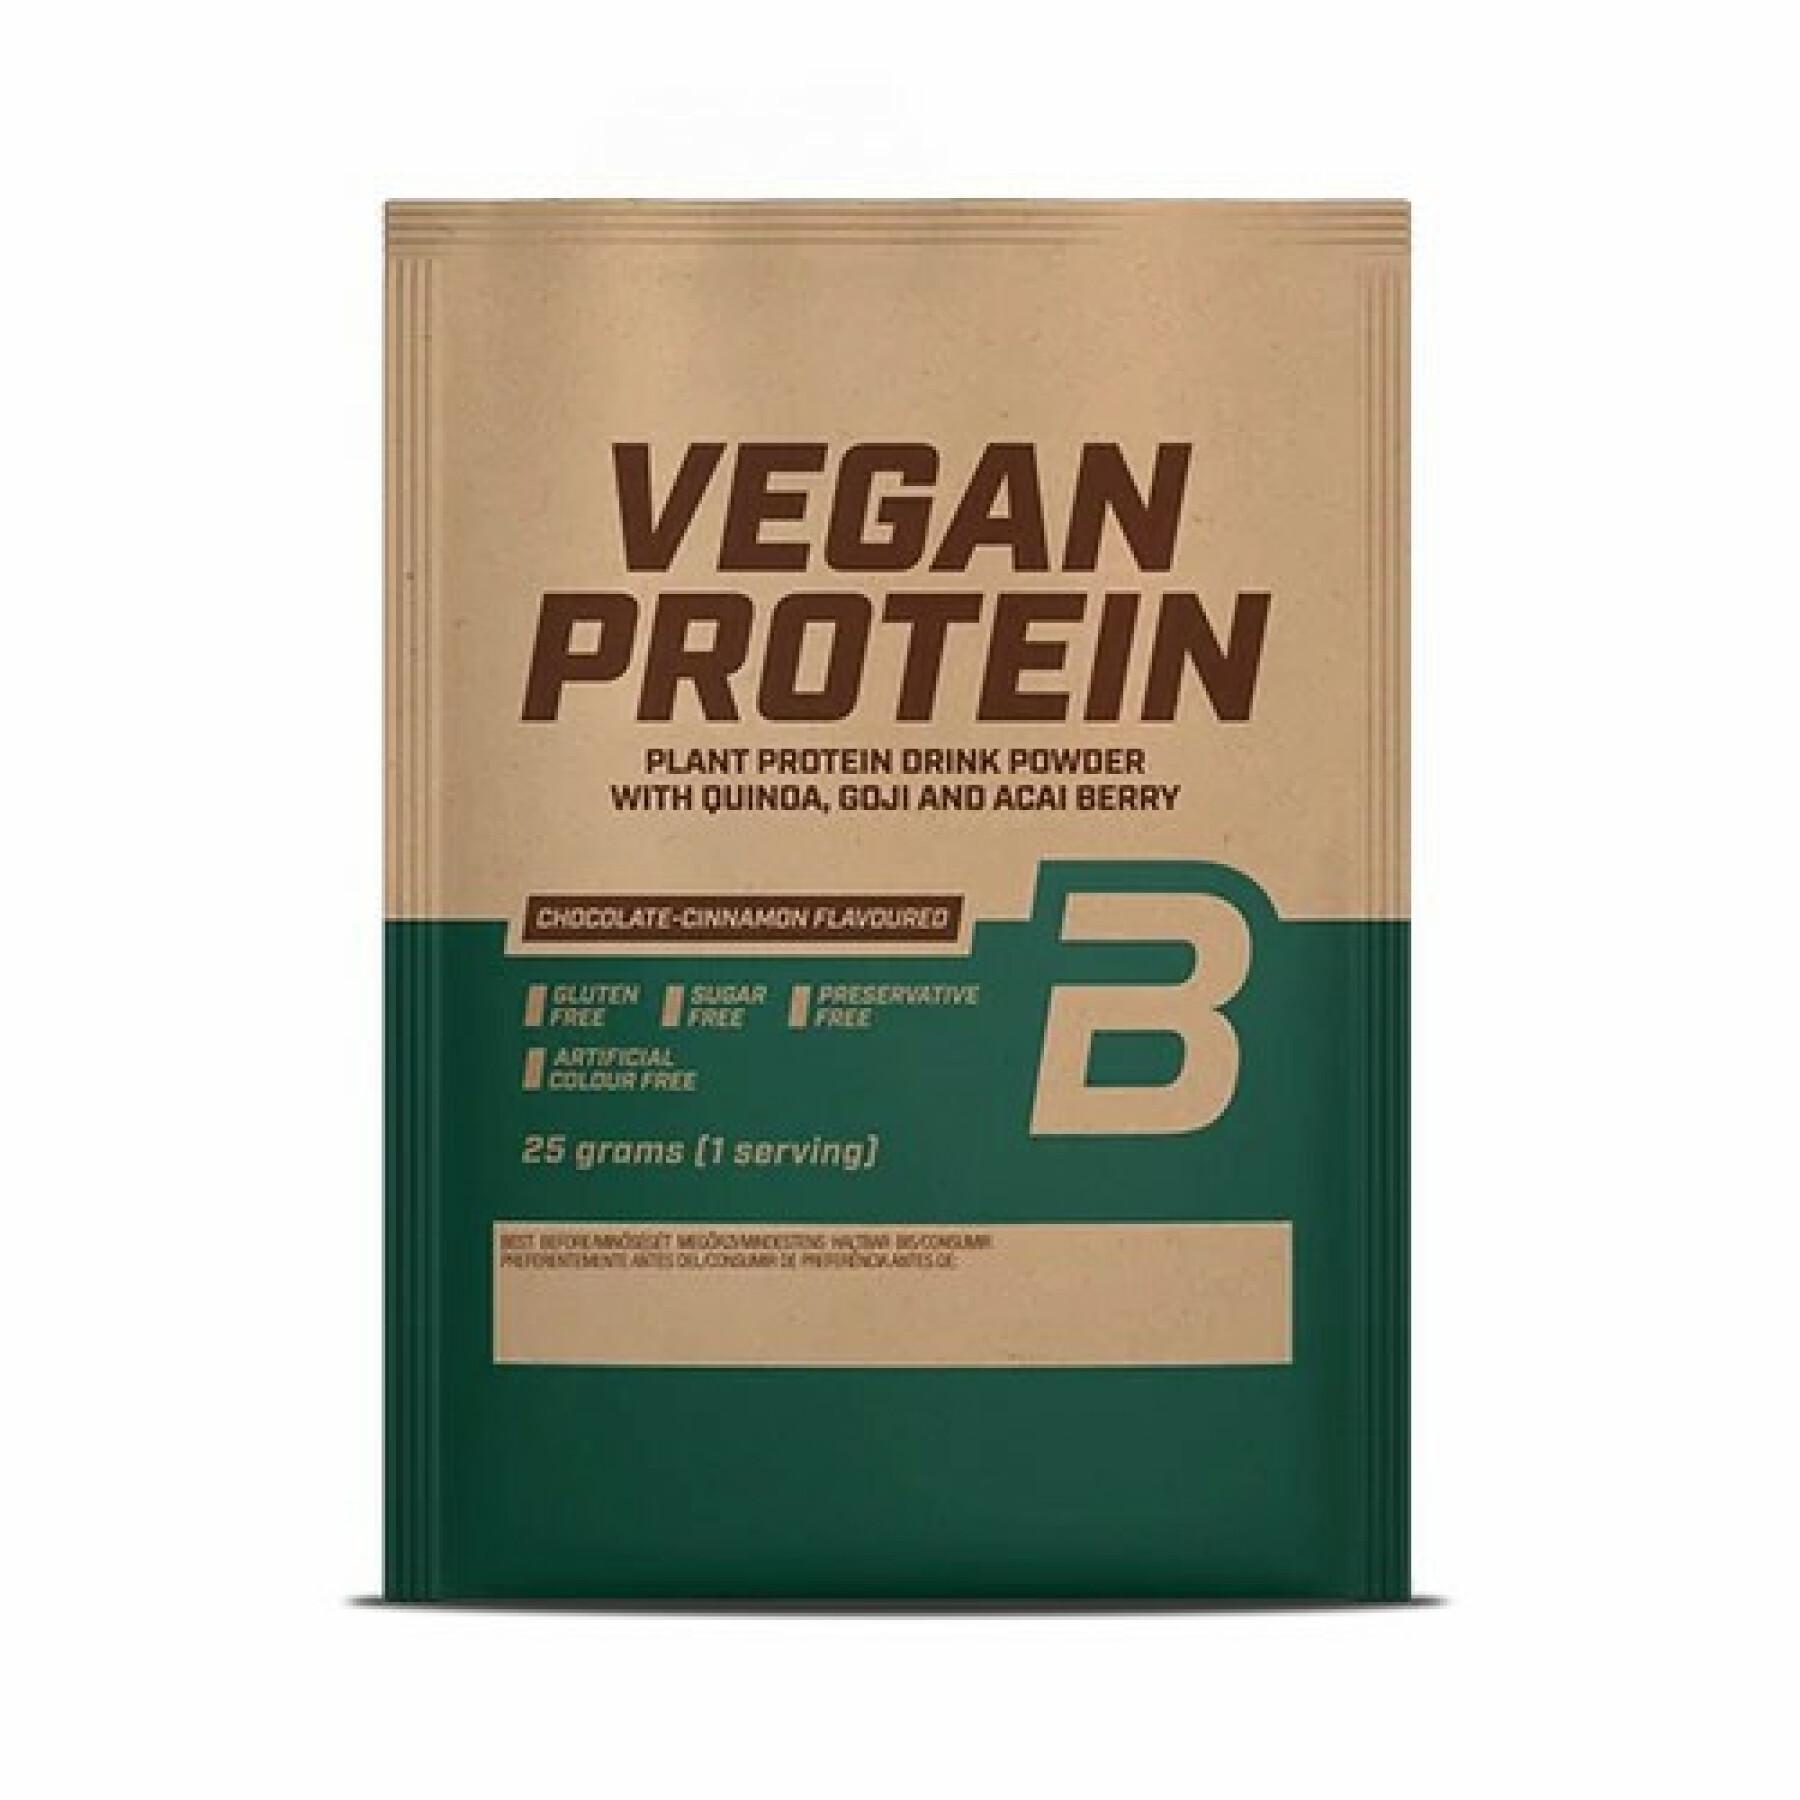 50er Pack Beutel mit veganem Protein Biotech USA - Schokolade-cannelle - 25g